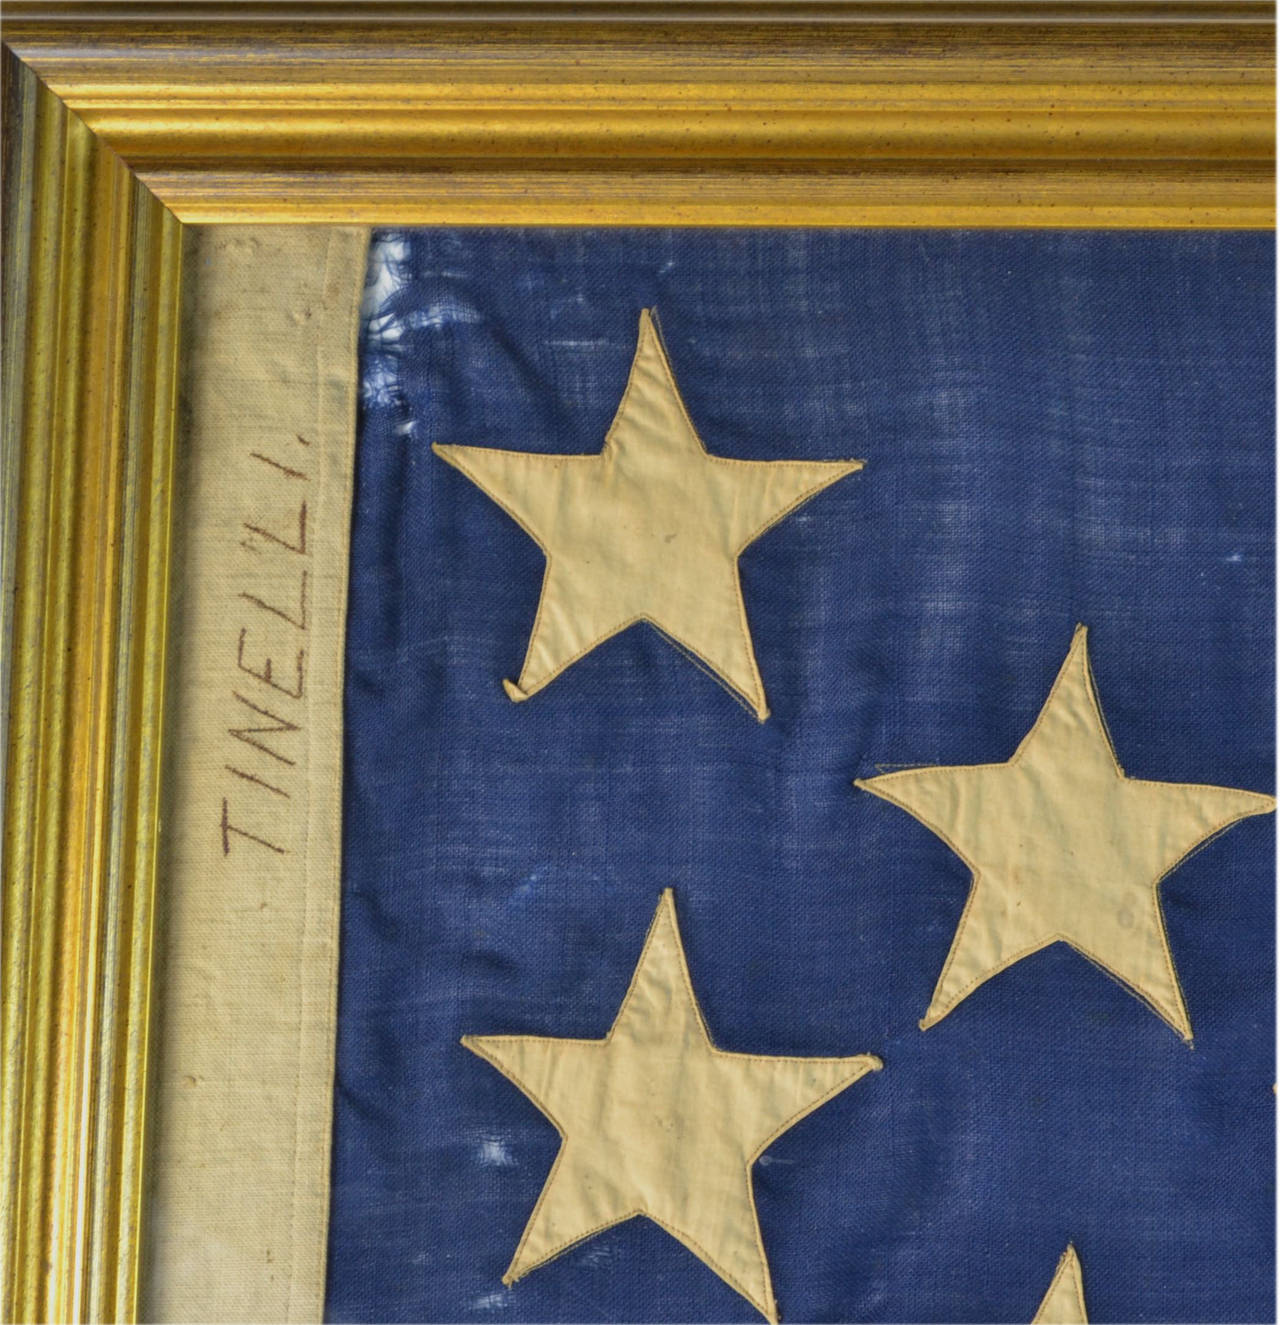 American Hand Sewn 13 Star Civil War Battle Flag